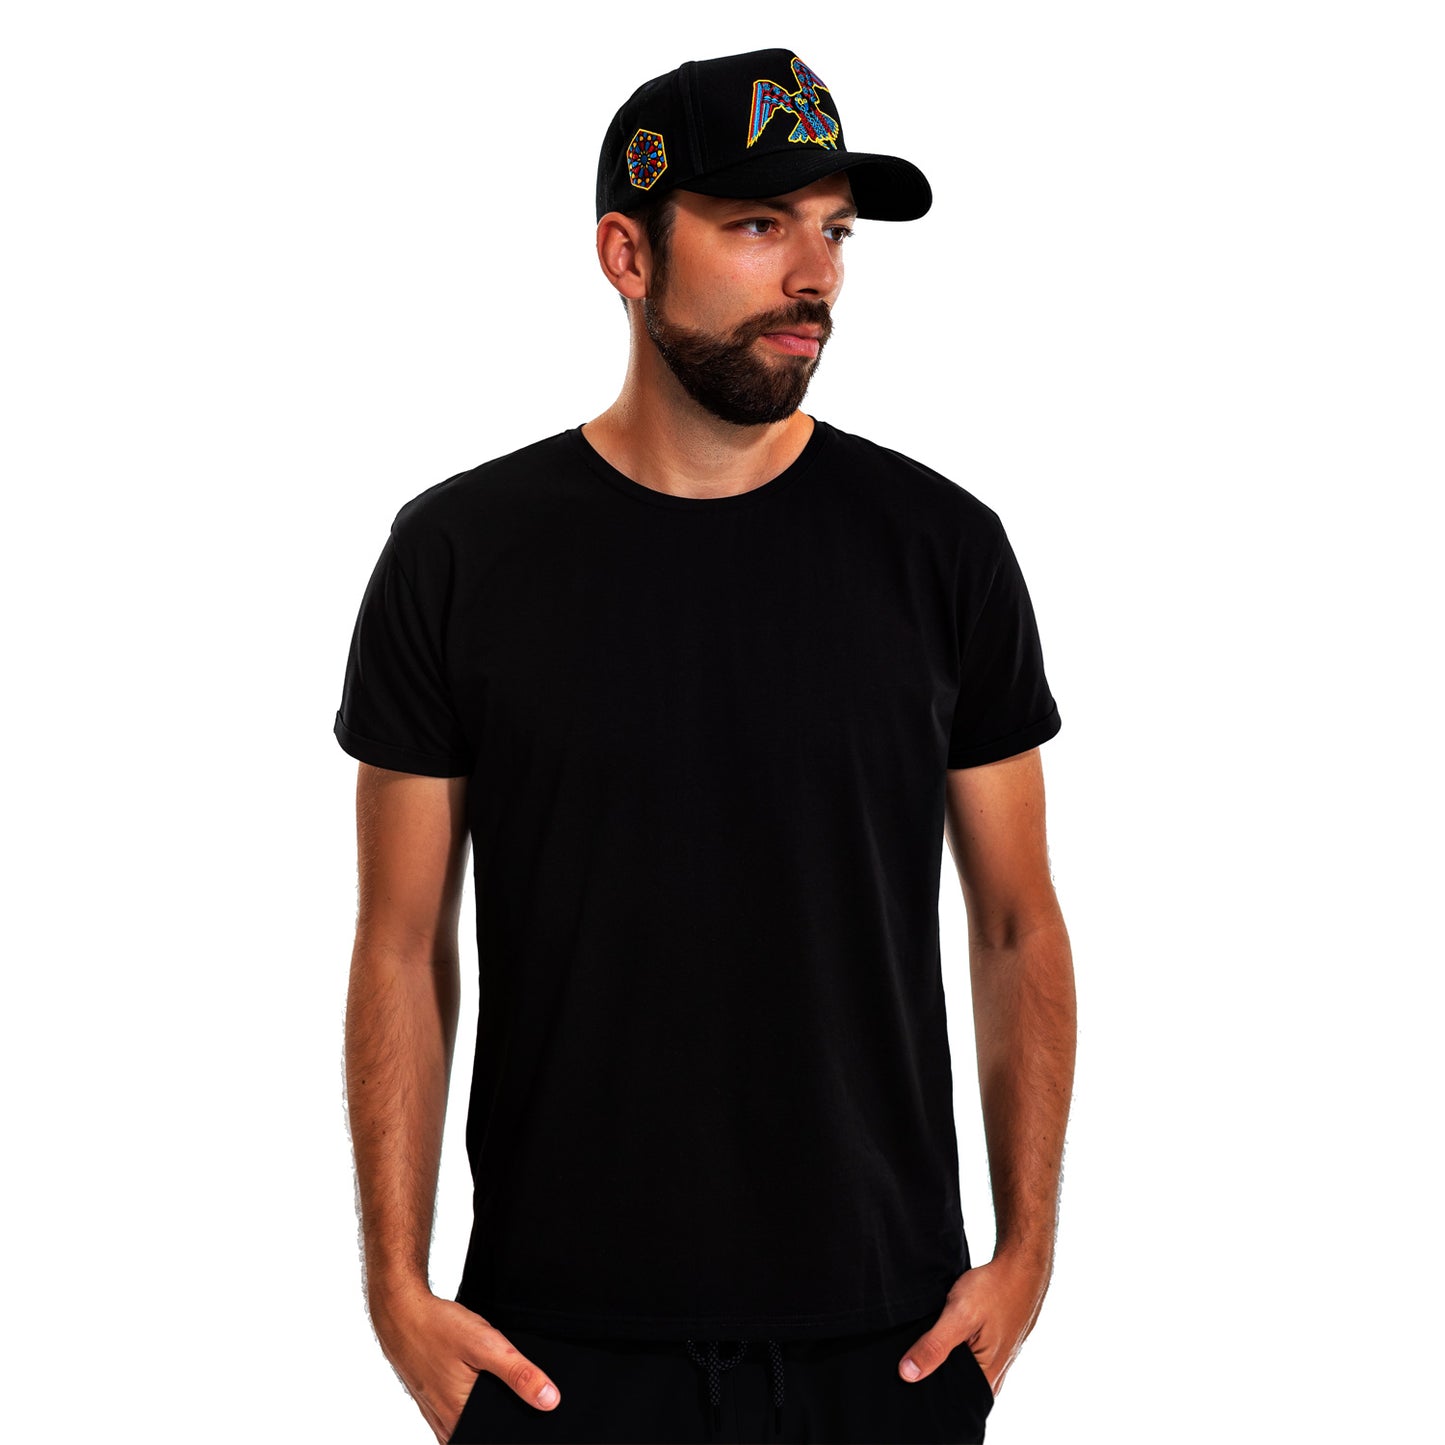 Deep black, T-shirt, shirt, man, plane tee, soft cotton, sleek, front view, model